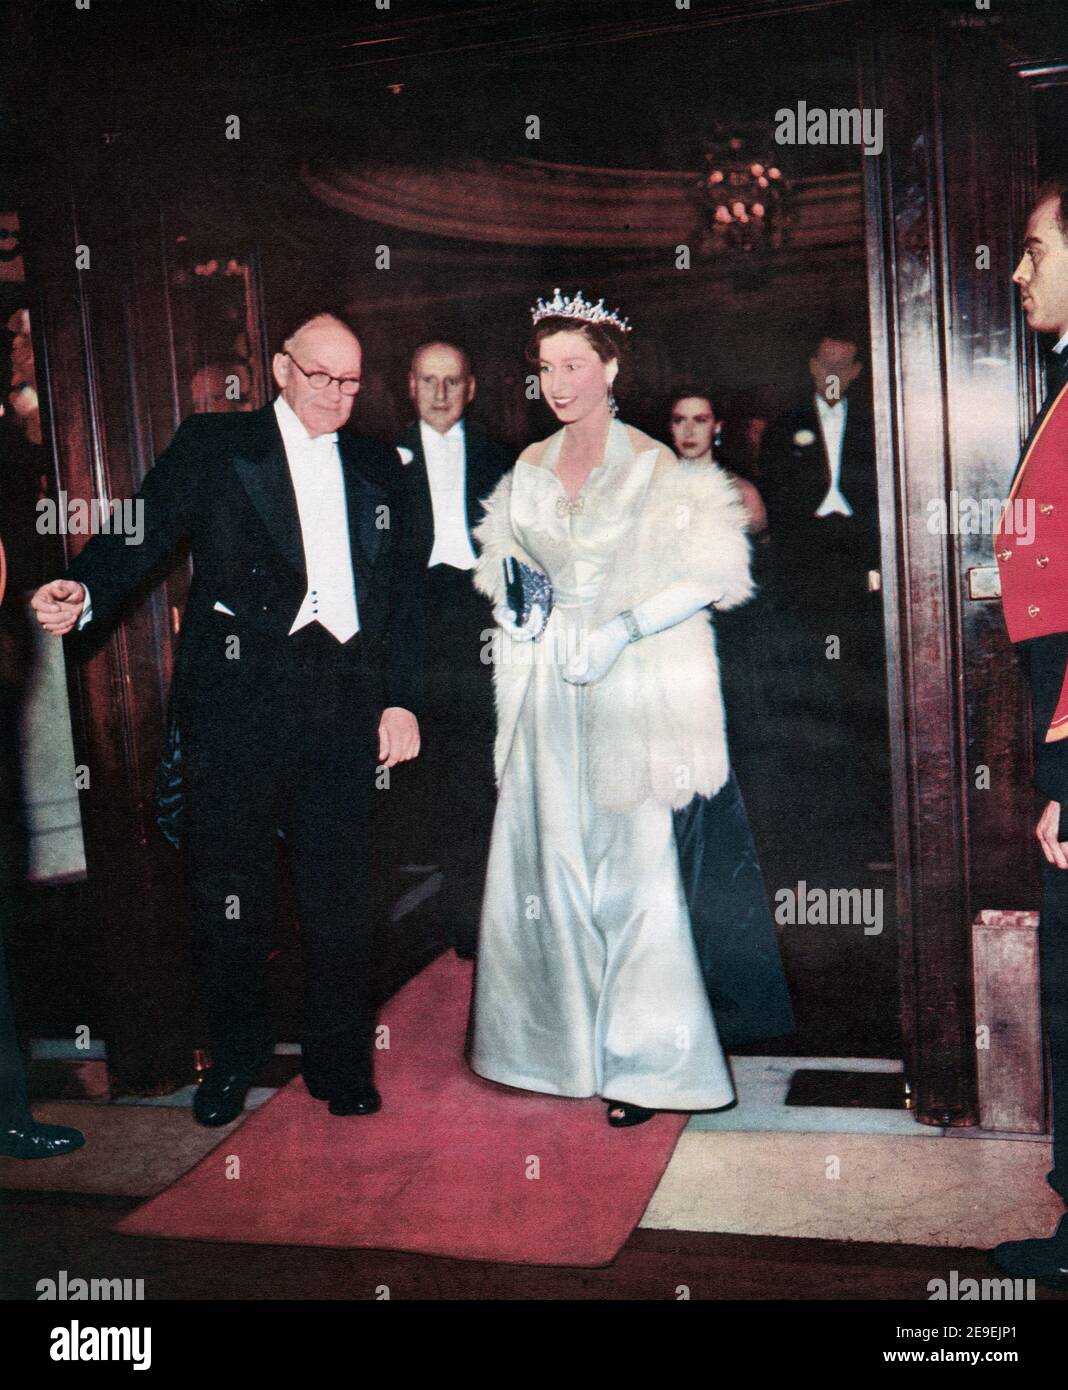 EDITORIALE SOLO Elizabeth II visto qui al Royal Film Show at the Empire, Leicester Square, Londra, Inghilterra, 1952. Elisabetta II, Regina del Regno Unito, 1926 - 2022. Dal Queen Elizabeth Coronation Book, pubblicato nel 1953. Foto Stock